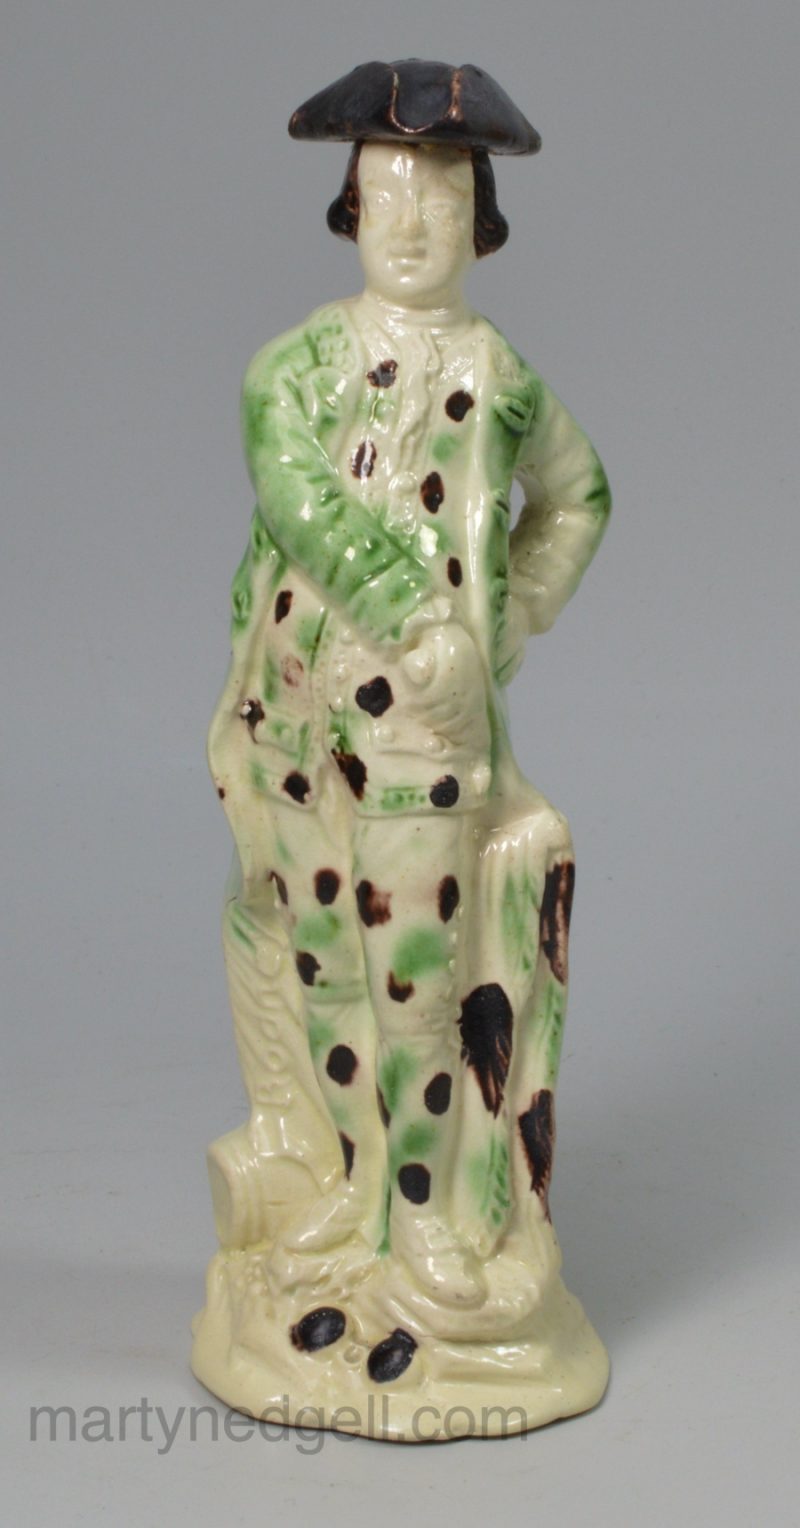 Rare creamware figure of Lord Rodney, circa 1790